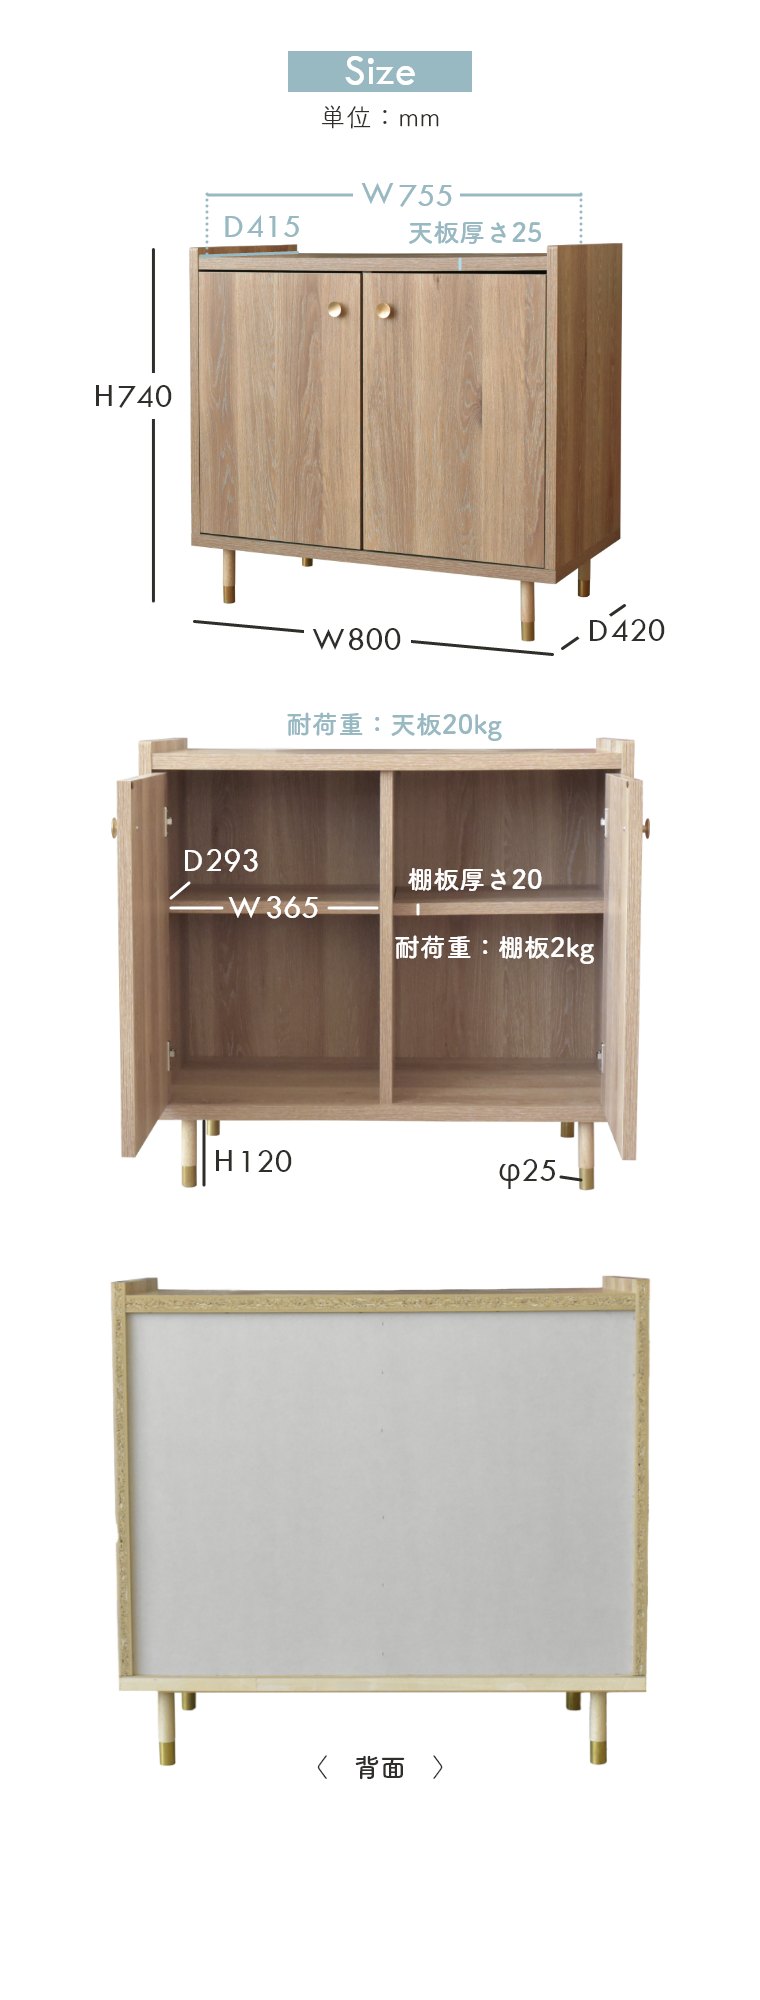 キャビネット 収納家具 ヴァロ 幅80cm ガルト 日本製 国産 木製